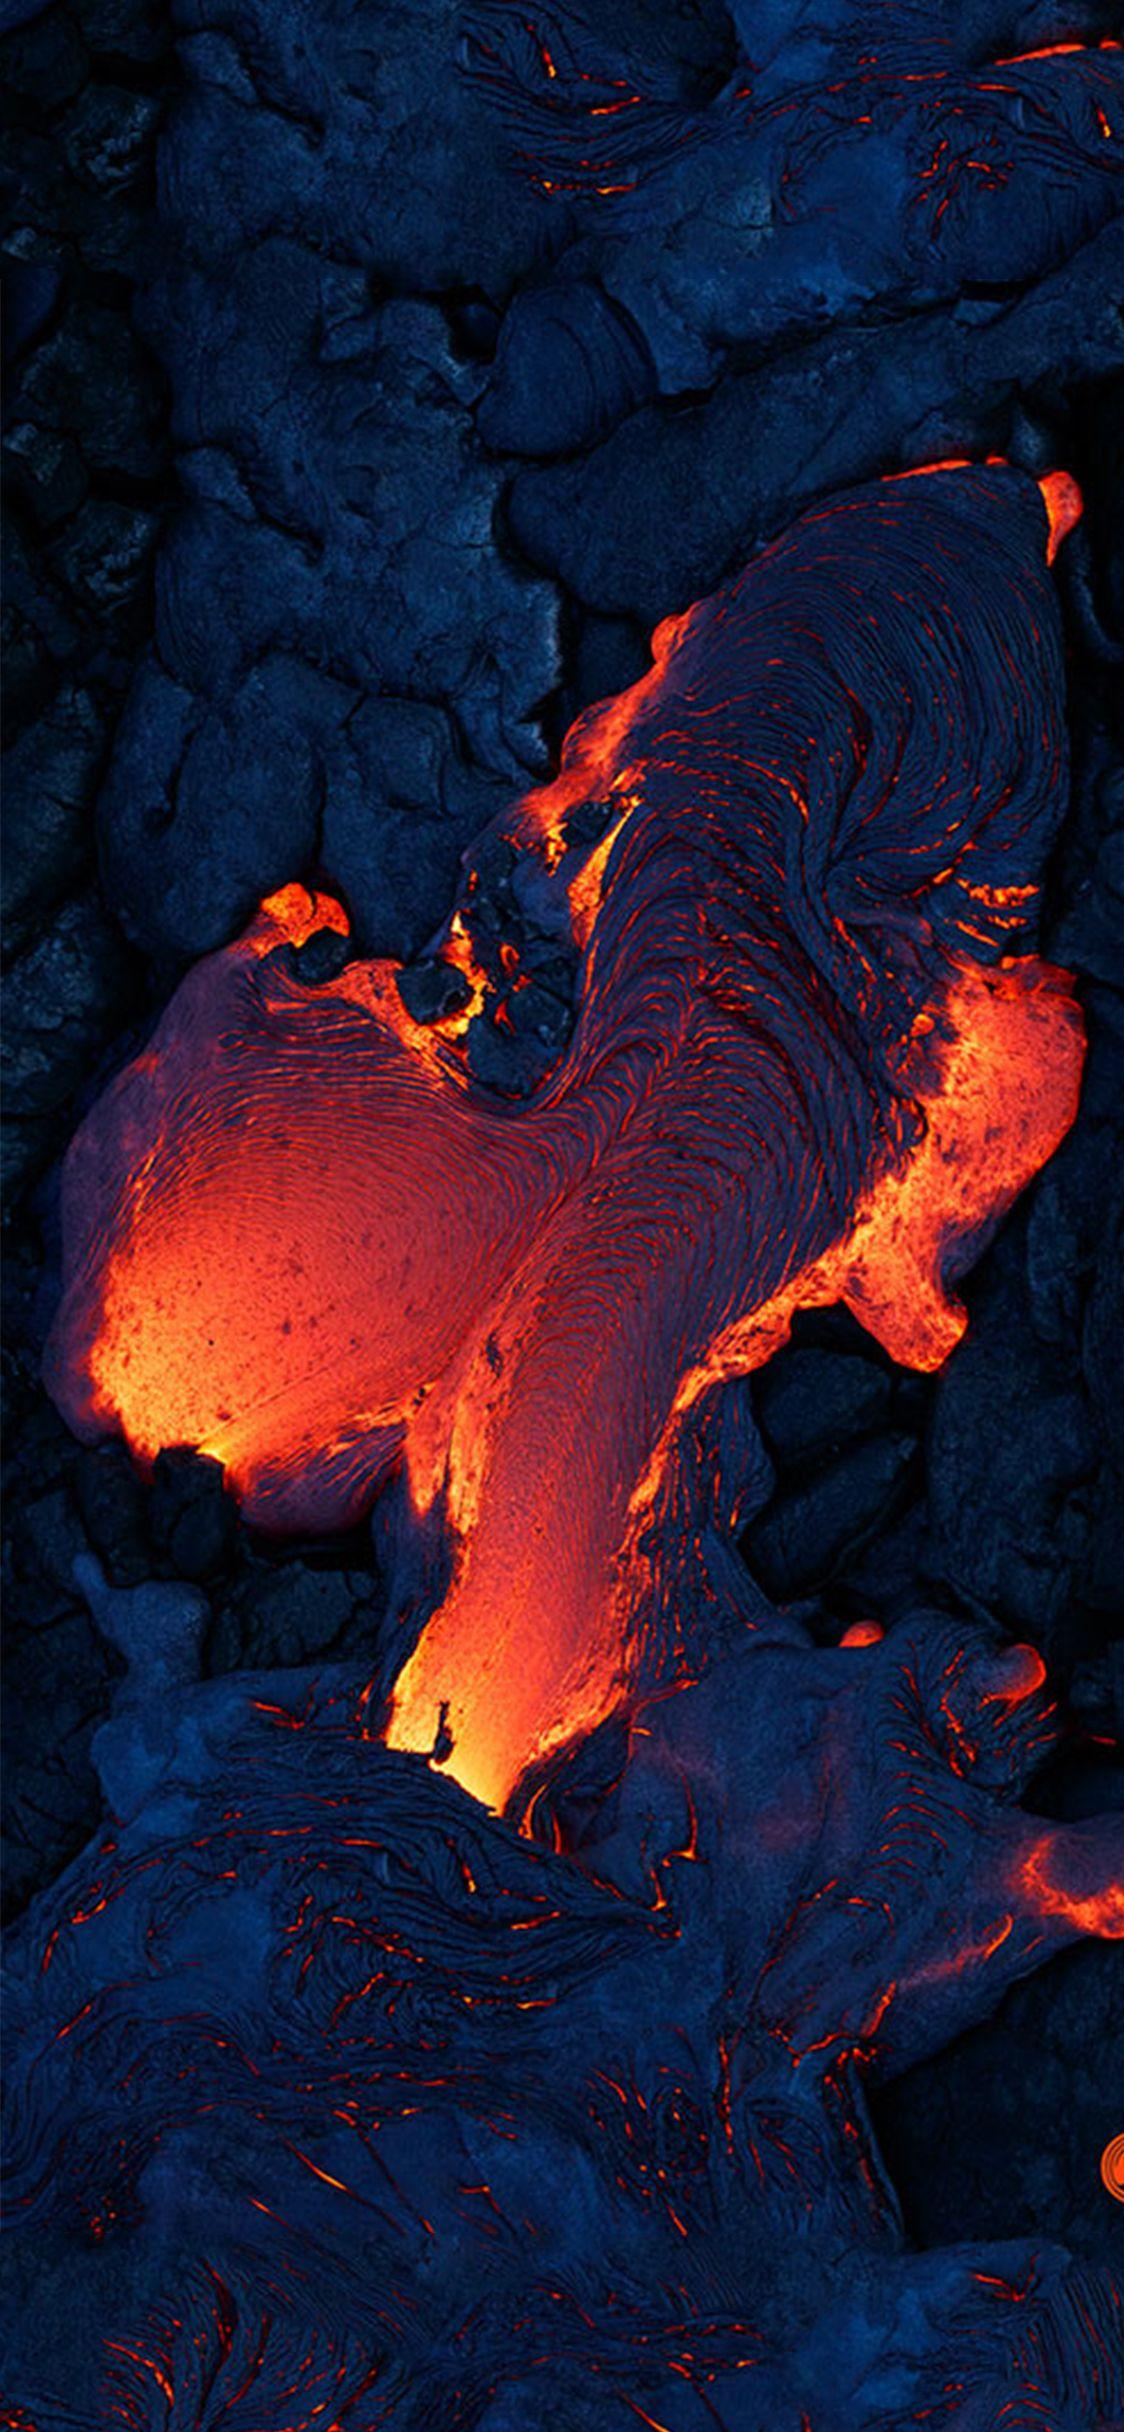 Best volcano wallpaper for iPhone x